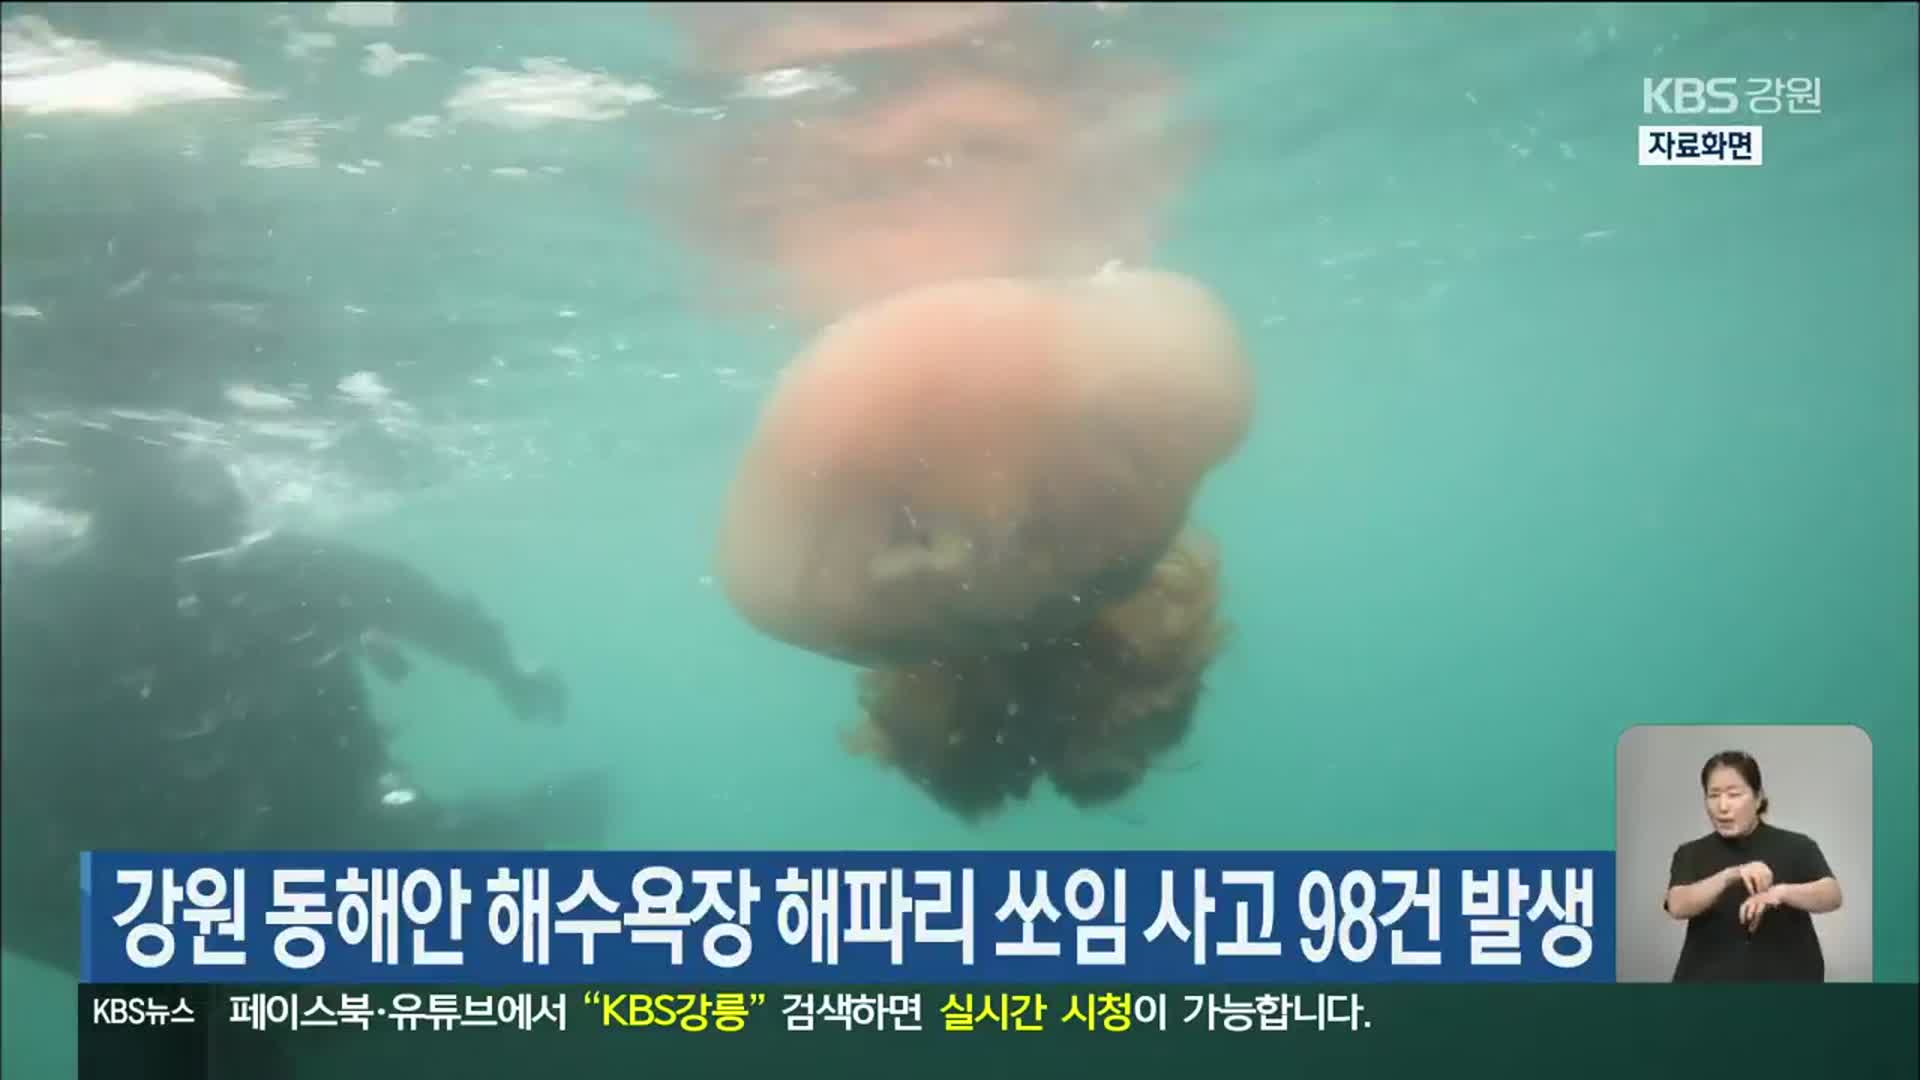 강원 동해안 해수욕장 해파리 쏘임 사고 98건 발생